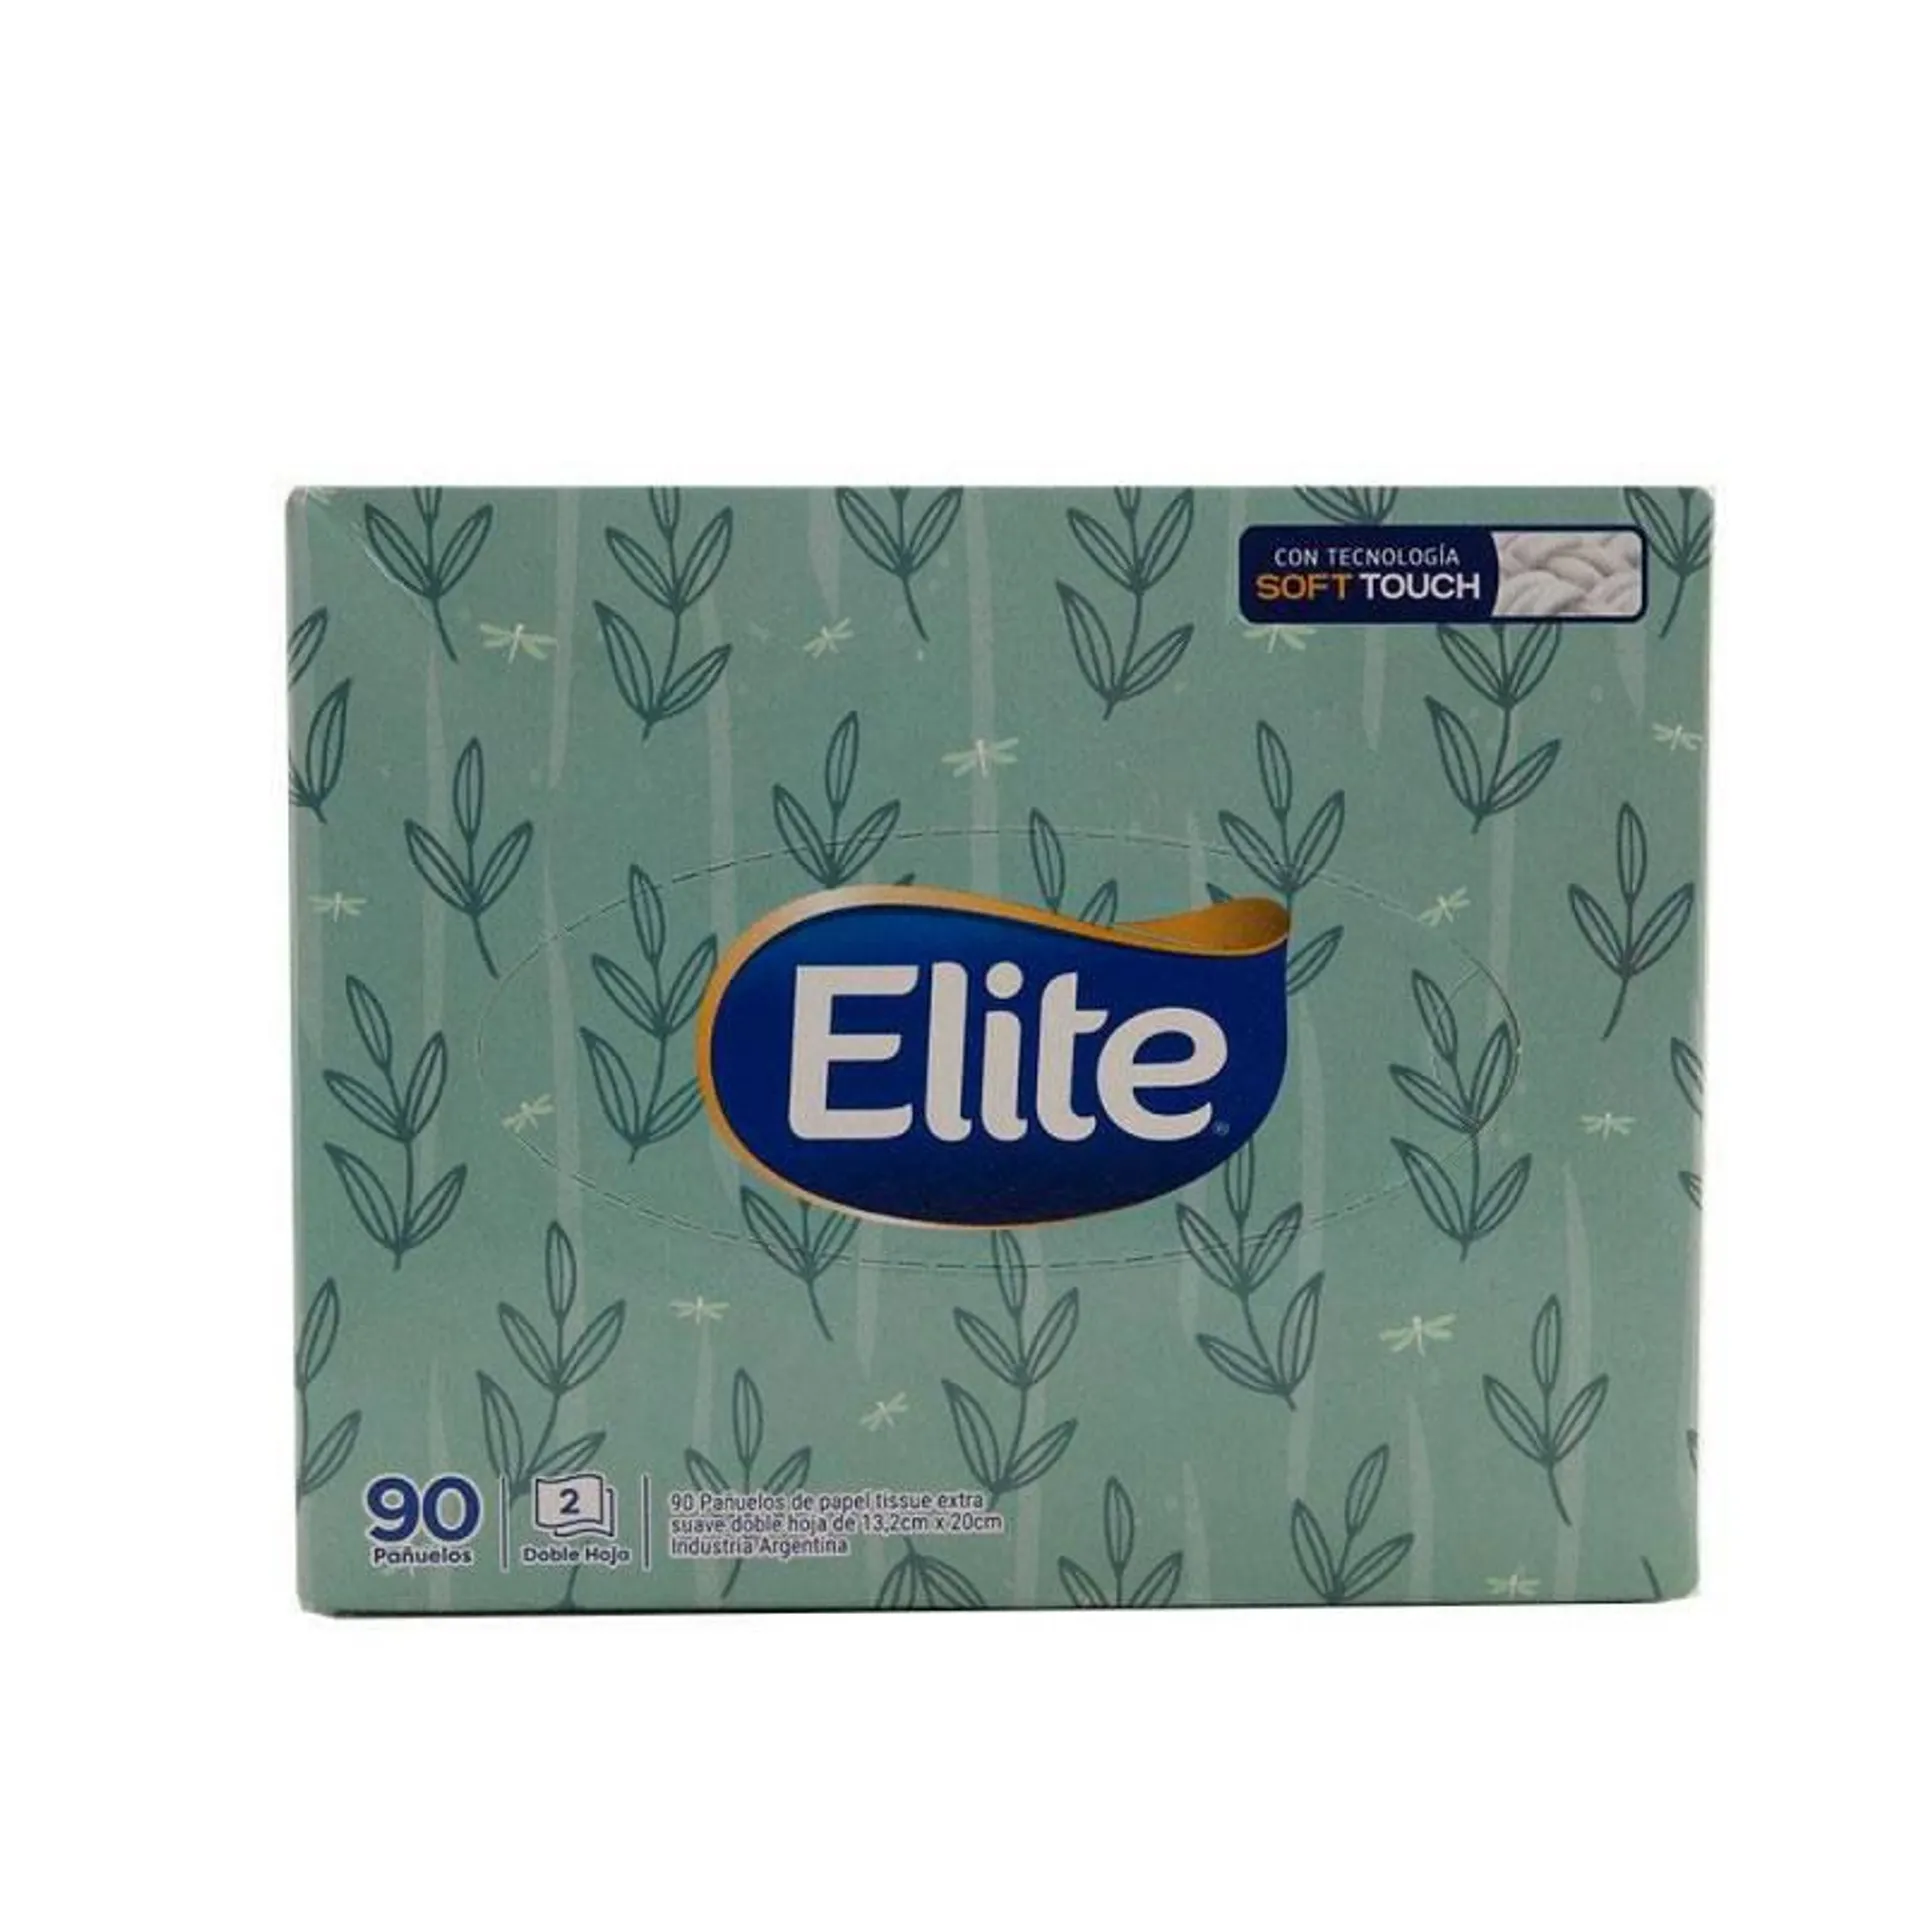 Pañuelitos Elite Box Soft touch x 90 Un.